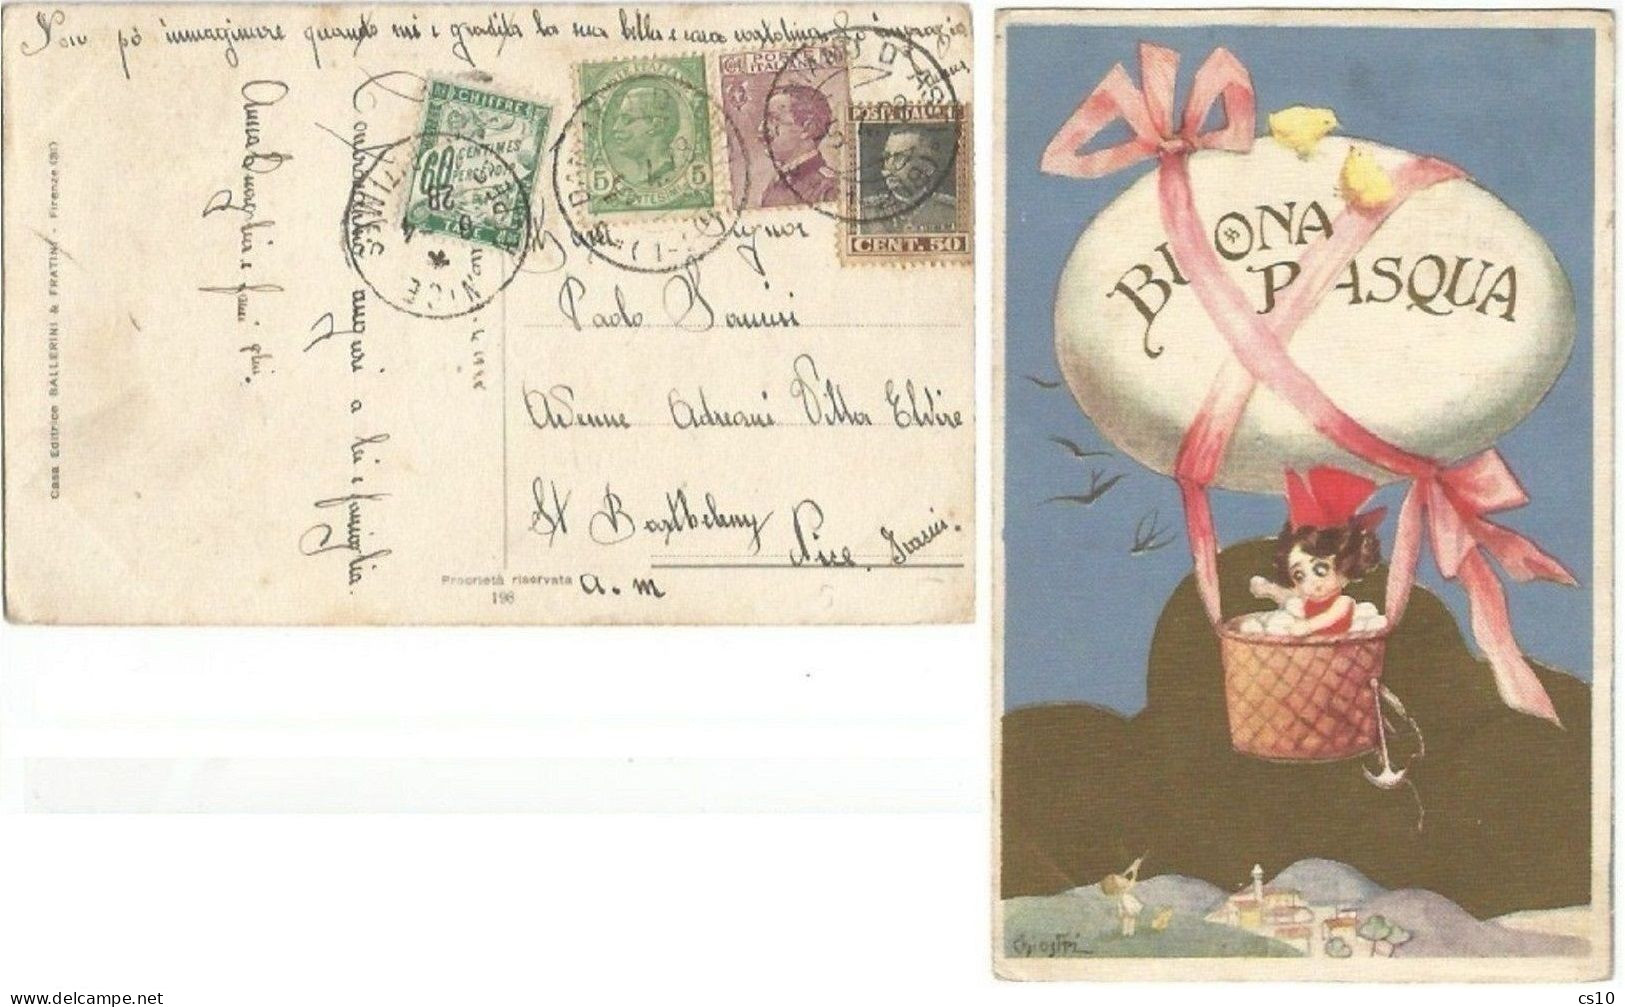 Cartolina Illustratore Chiostri - Buona Pasqua Da S.Damiano Asti 5apr1928 X Francia Tassata C.60 Verde - Storia Postale